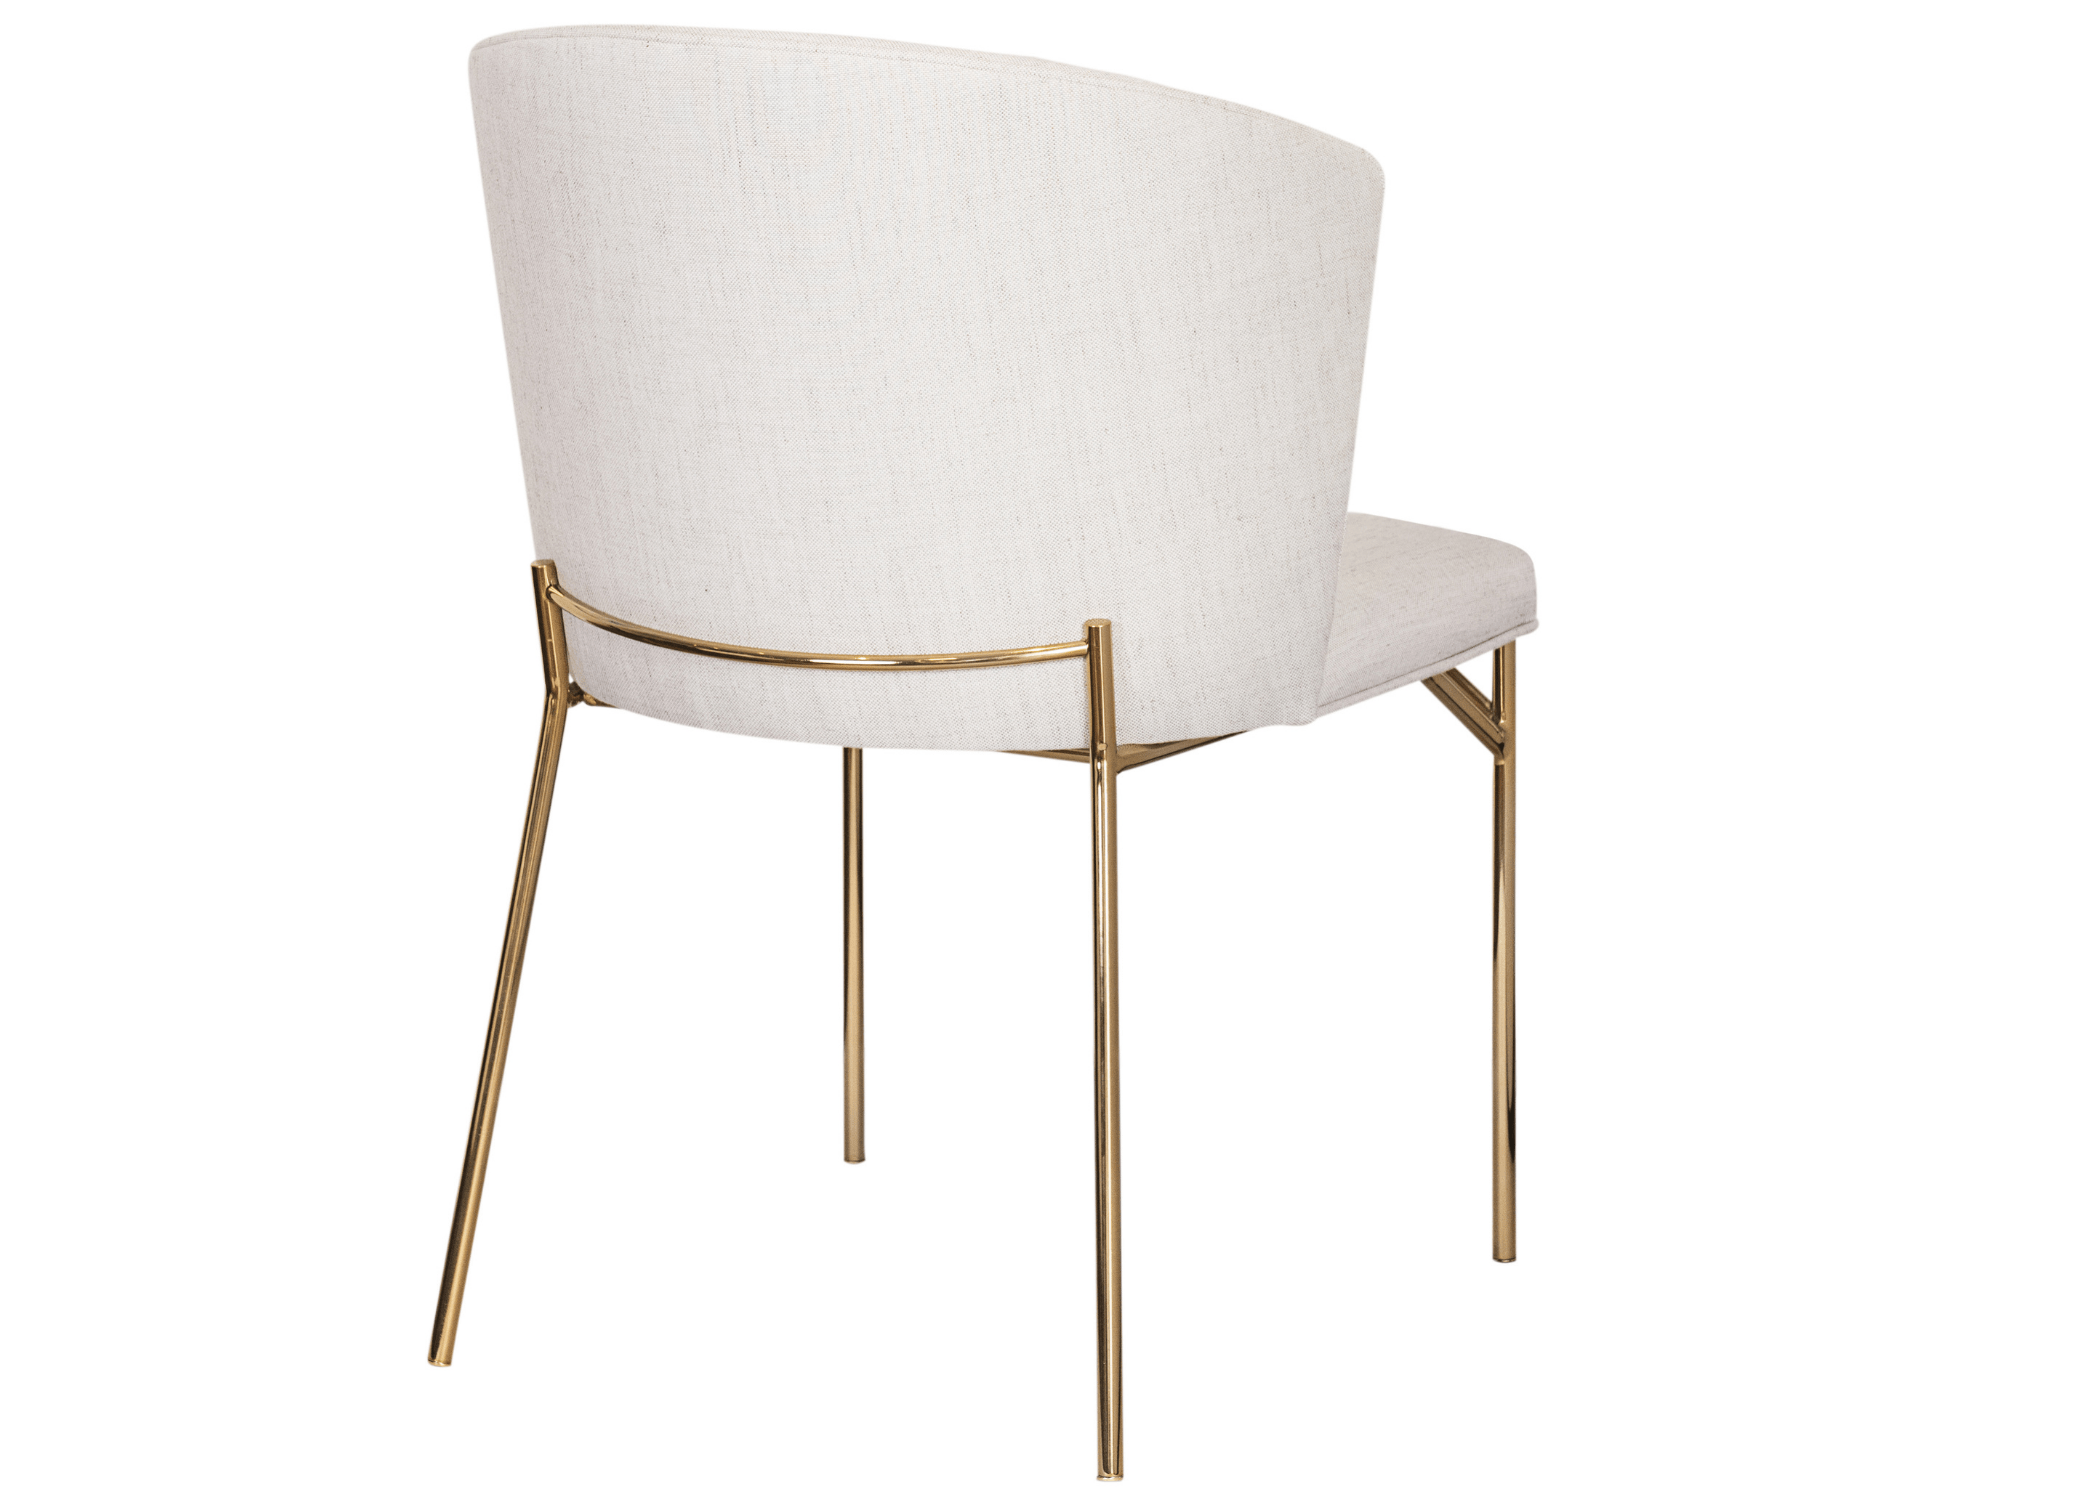 Design atemporal: Encosto da Cadeira Donna, uma combinação de estilo e suporte ergonômico.